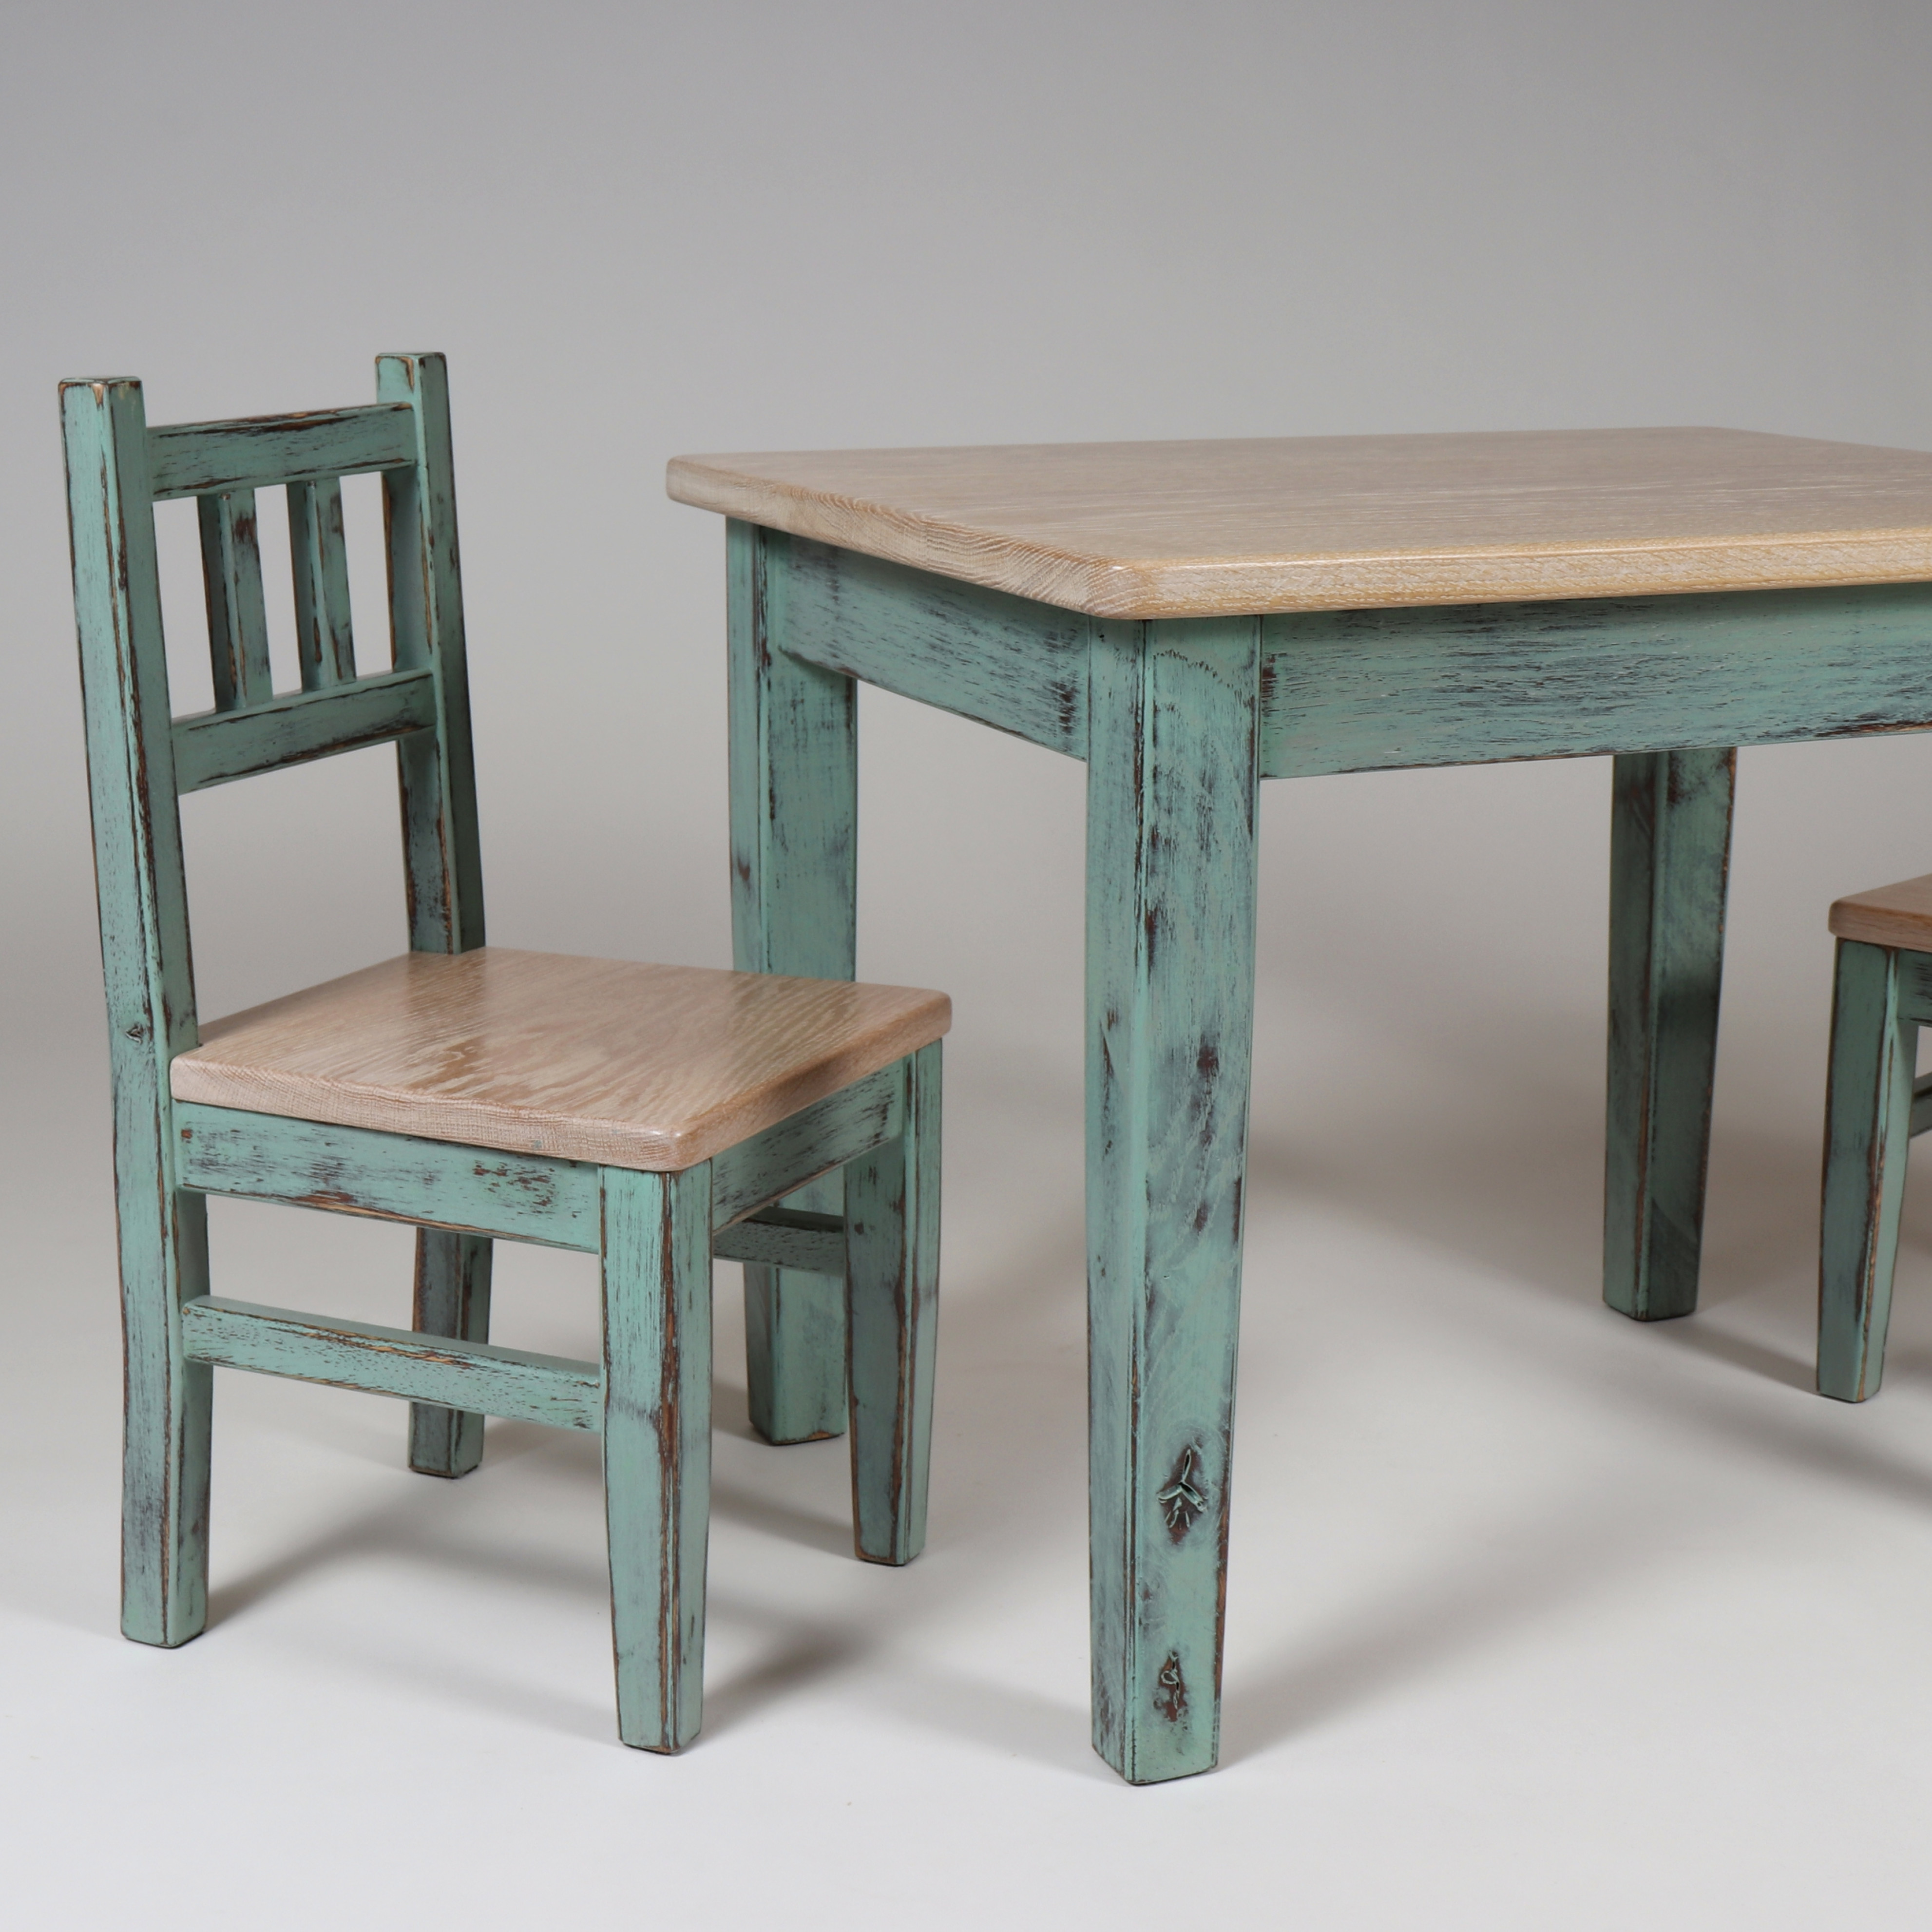 Kindertisch mit Stuhl shabby chic Stil Design Pastell grün weiß Vintage